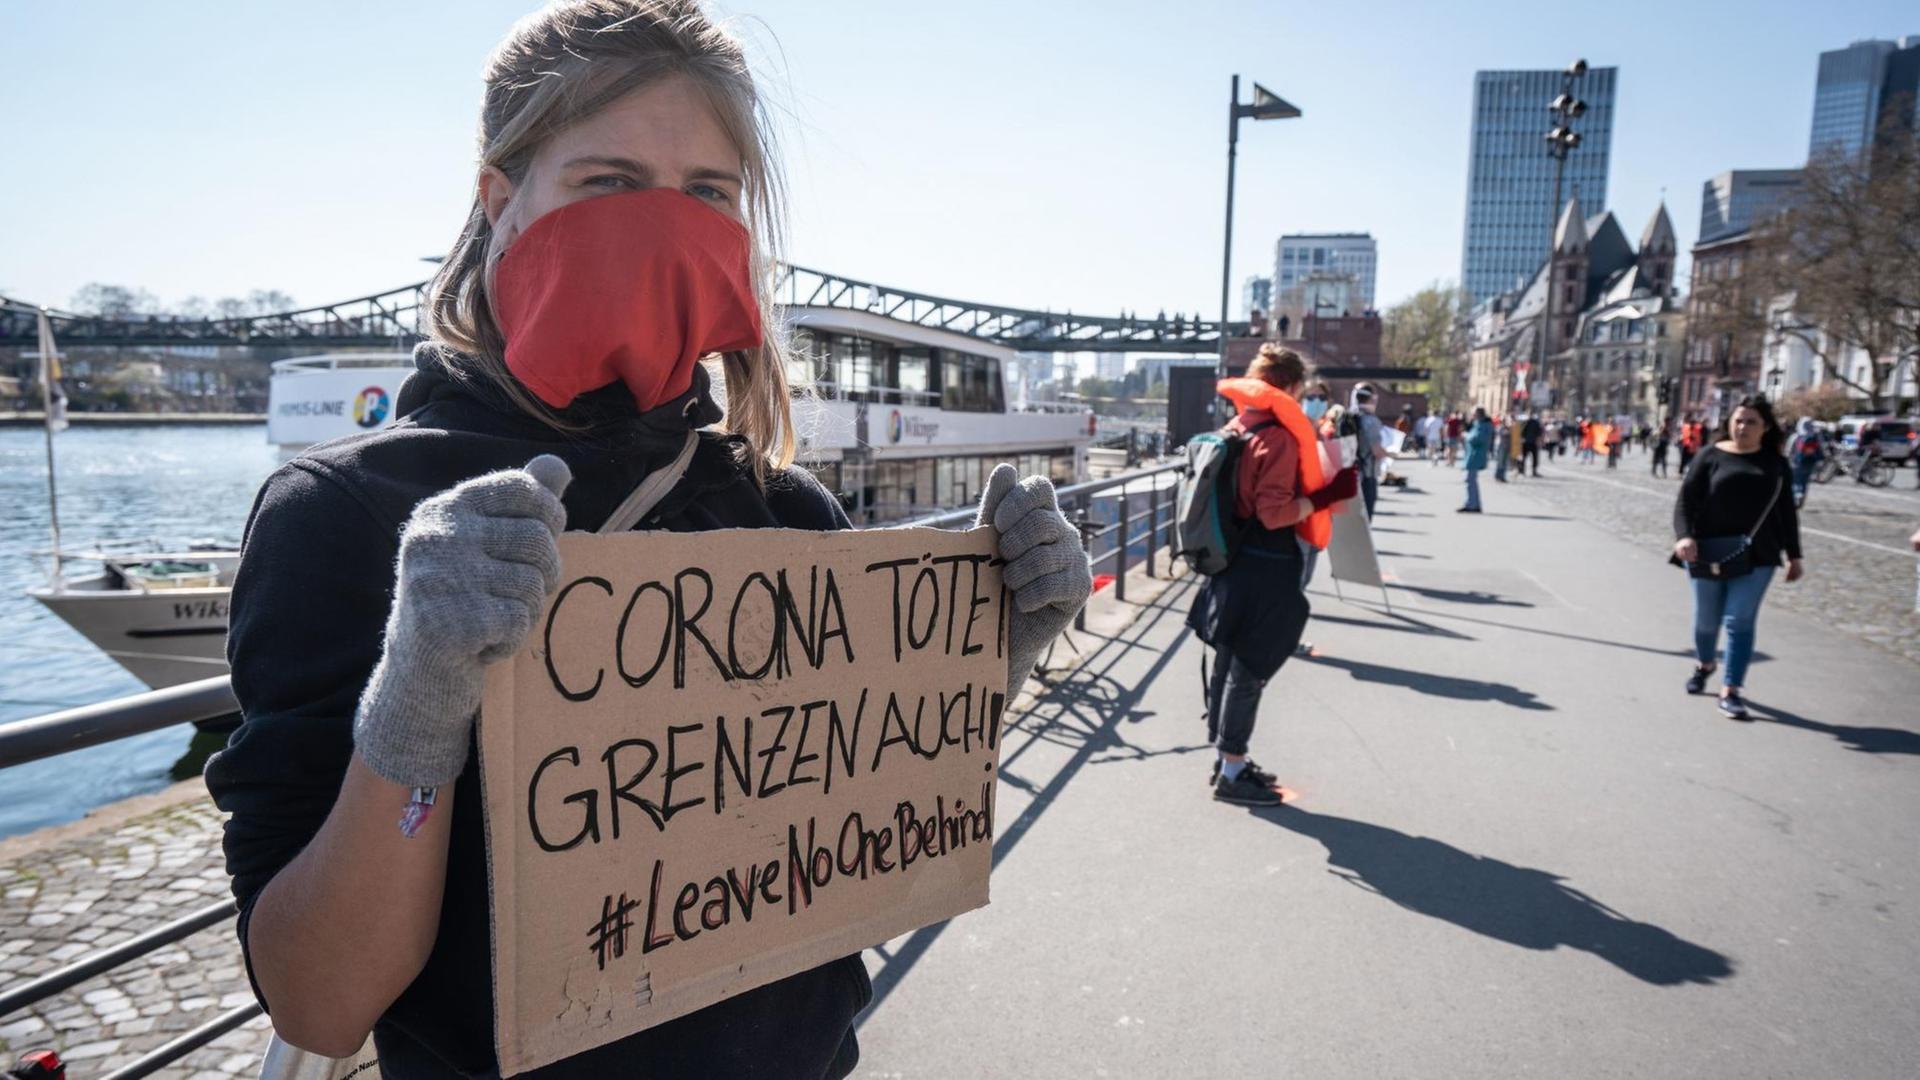 Mehrere Menschen stehen mit Mindestabstand und Schildern für #leavenoonebehind in Frankfurt am Main.